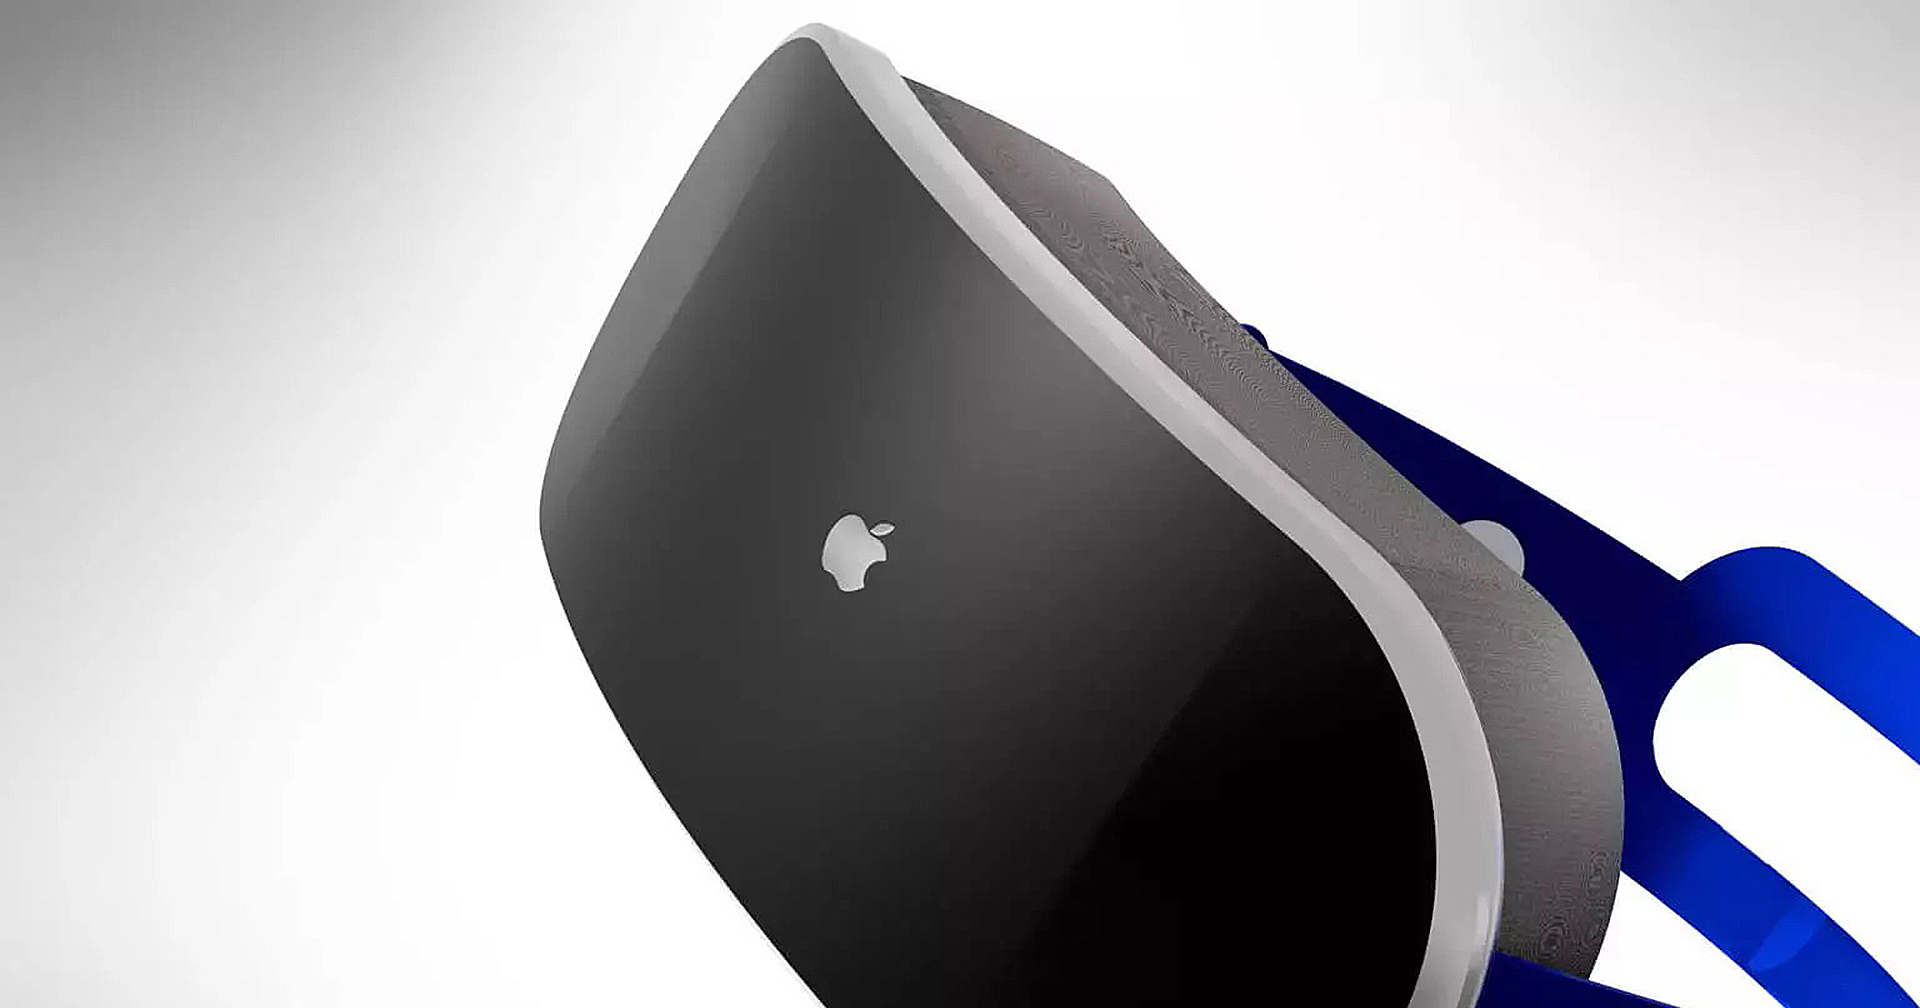 เผยรายละเอียด Apple Reality Pro : ชิป M2, ใช้เซนเซอร์ติดตามดวงตา ใบหน้า และมือ